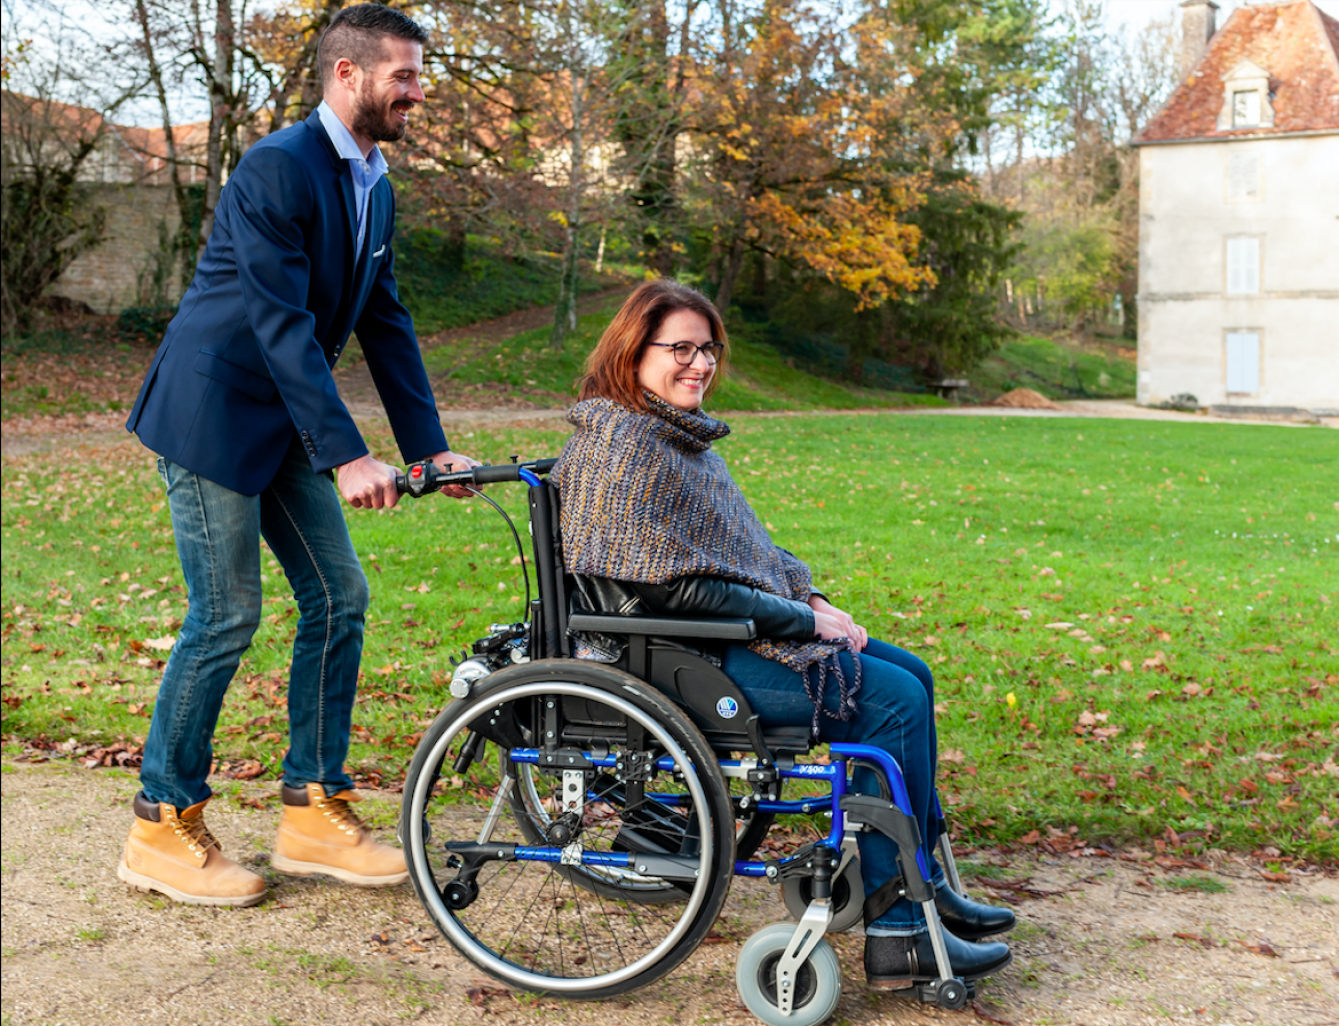 Benoît Systèmes conçoit des kits de motorisation pour les fauteuils roulants et va investir 1,7 millions d’euros pour regrouper ses activités sur un même site. (© Benoît Systèmes)